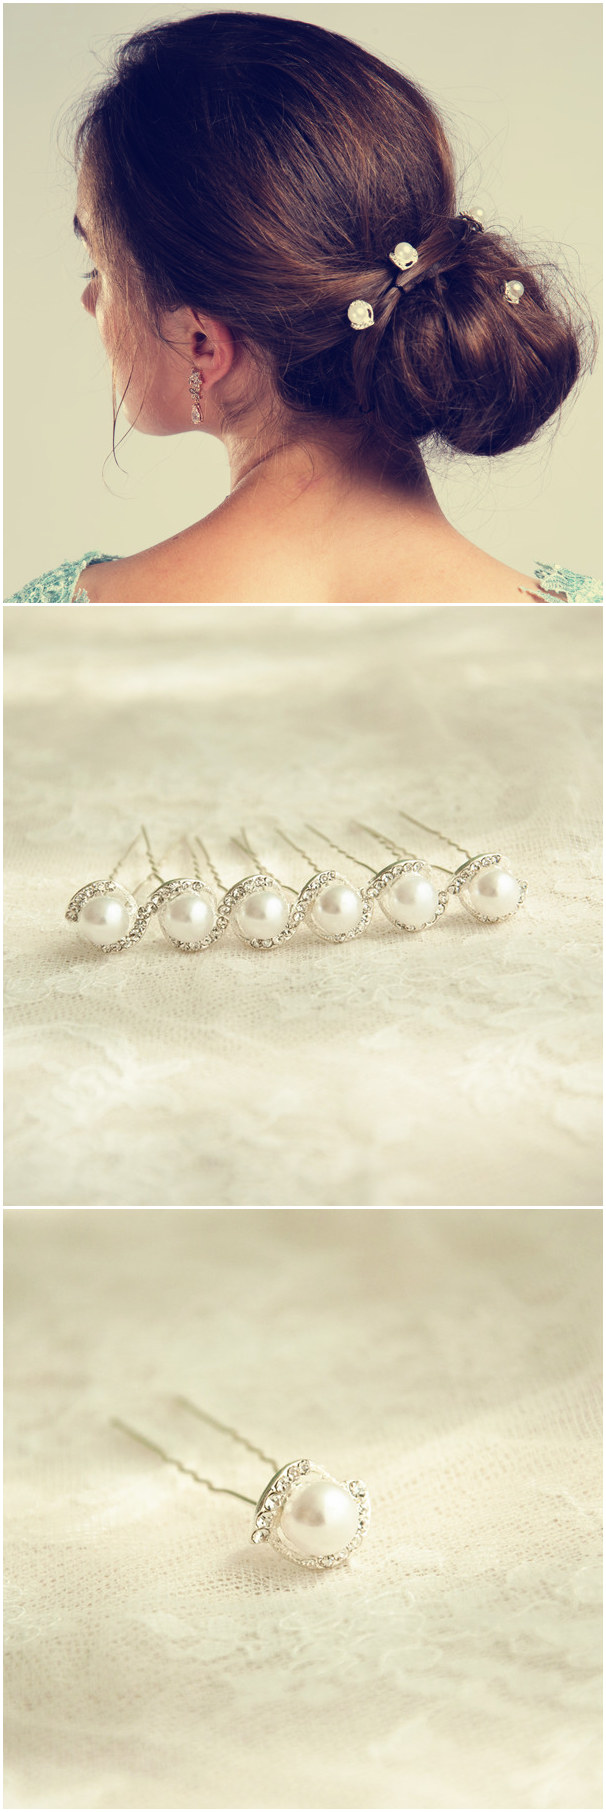 elegant-updo-wedding-hairstyles-with-simple-pearl-hair-pins-EWAHP004 (1)